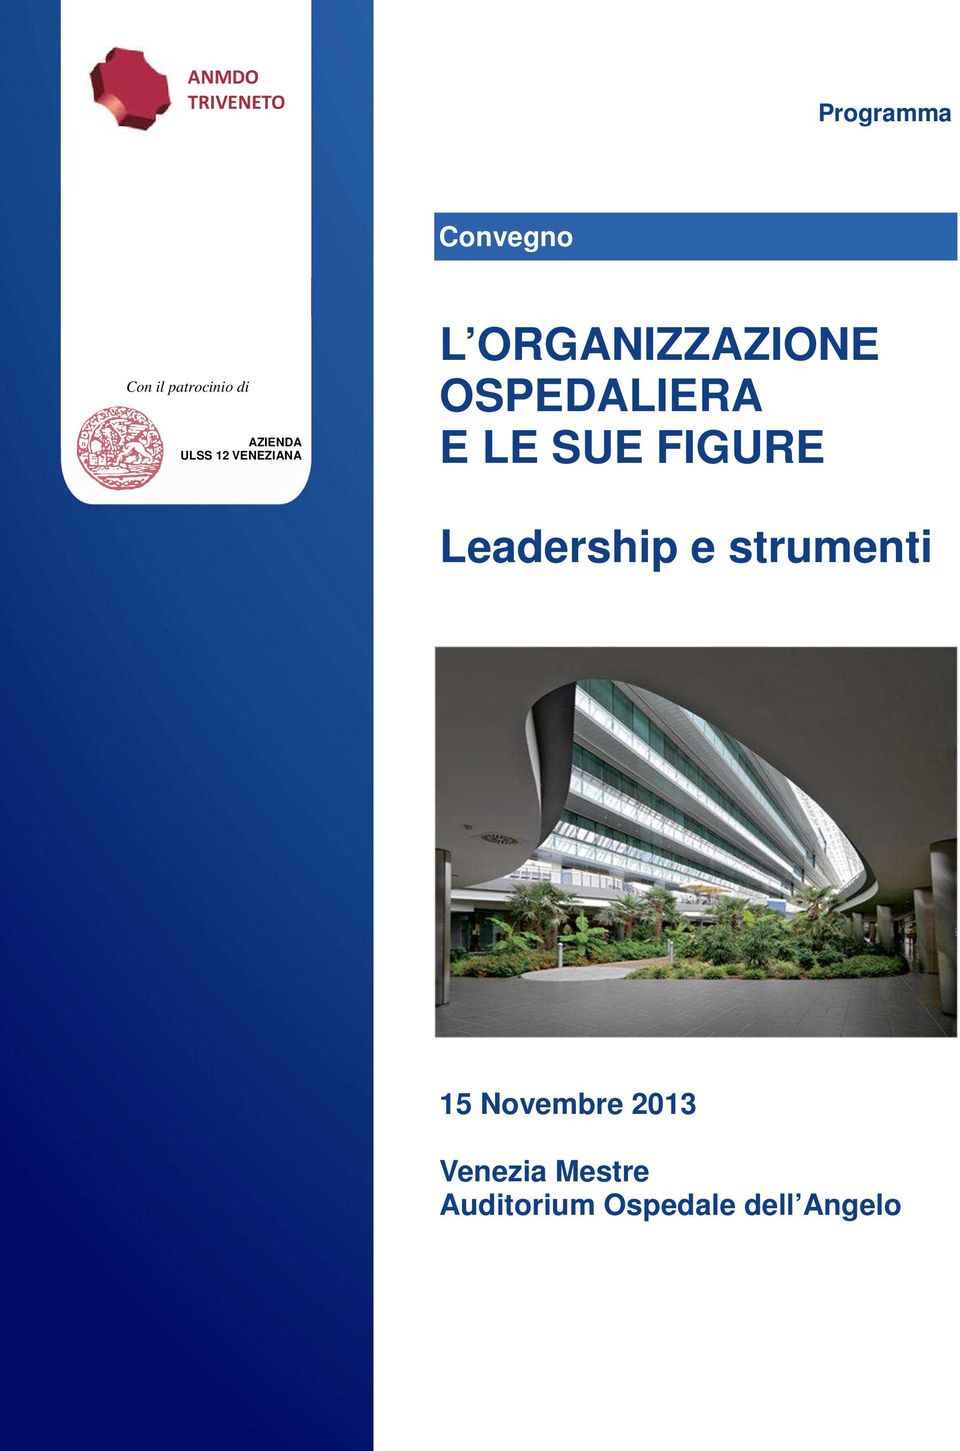 OSPEDALIERA E LE SUE FIGURE Leadership e strumenti 15